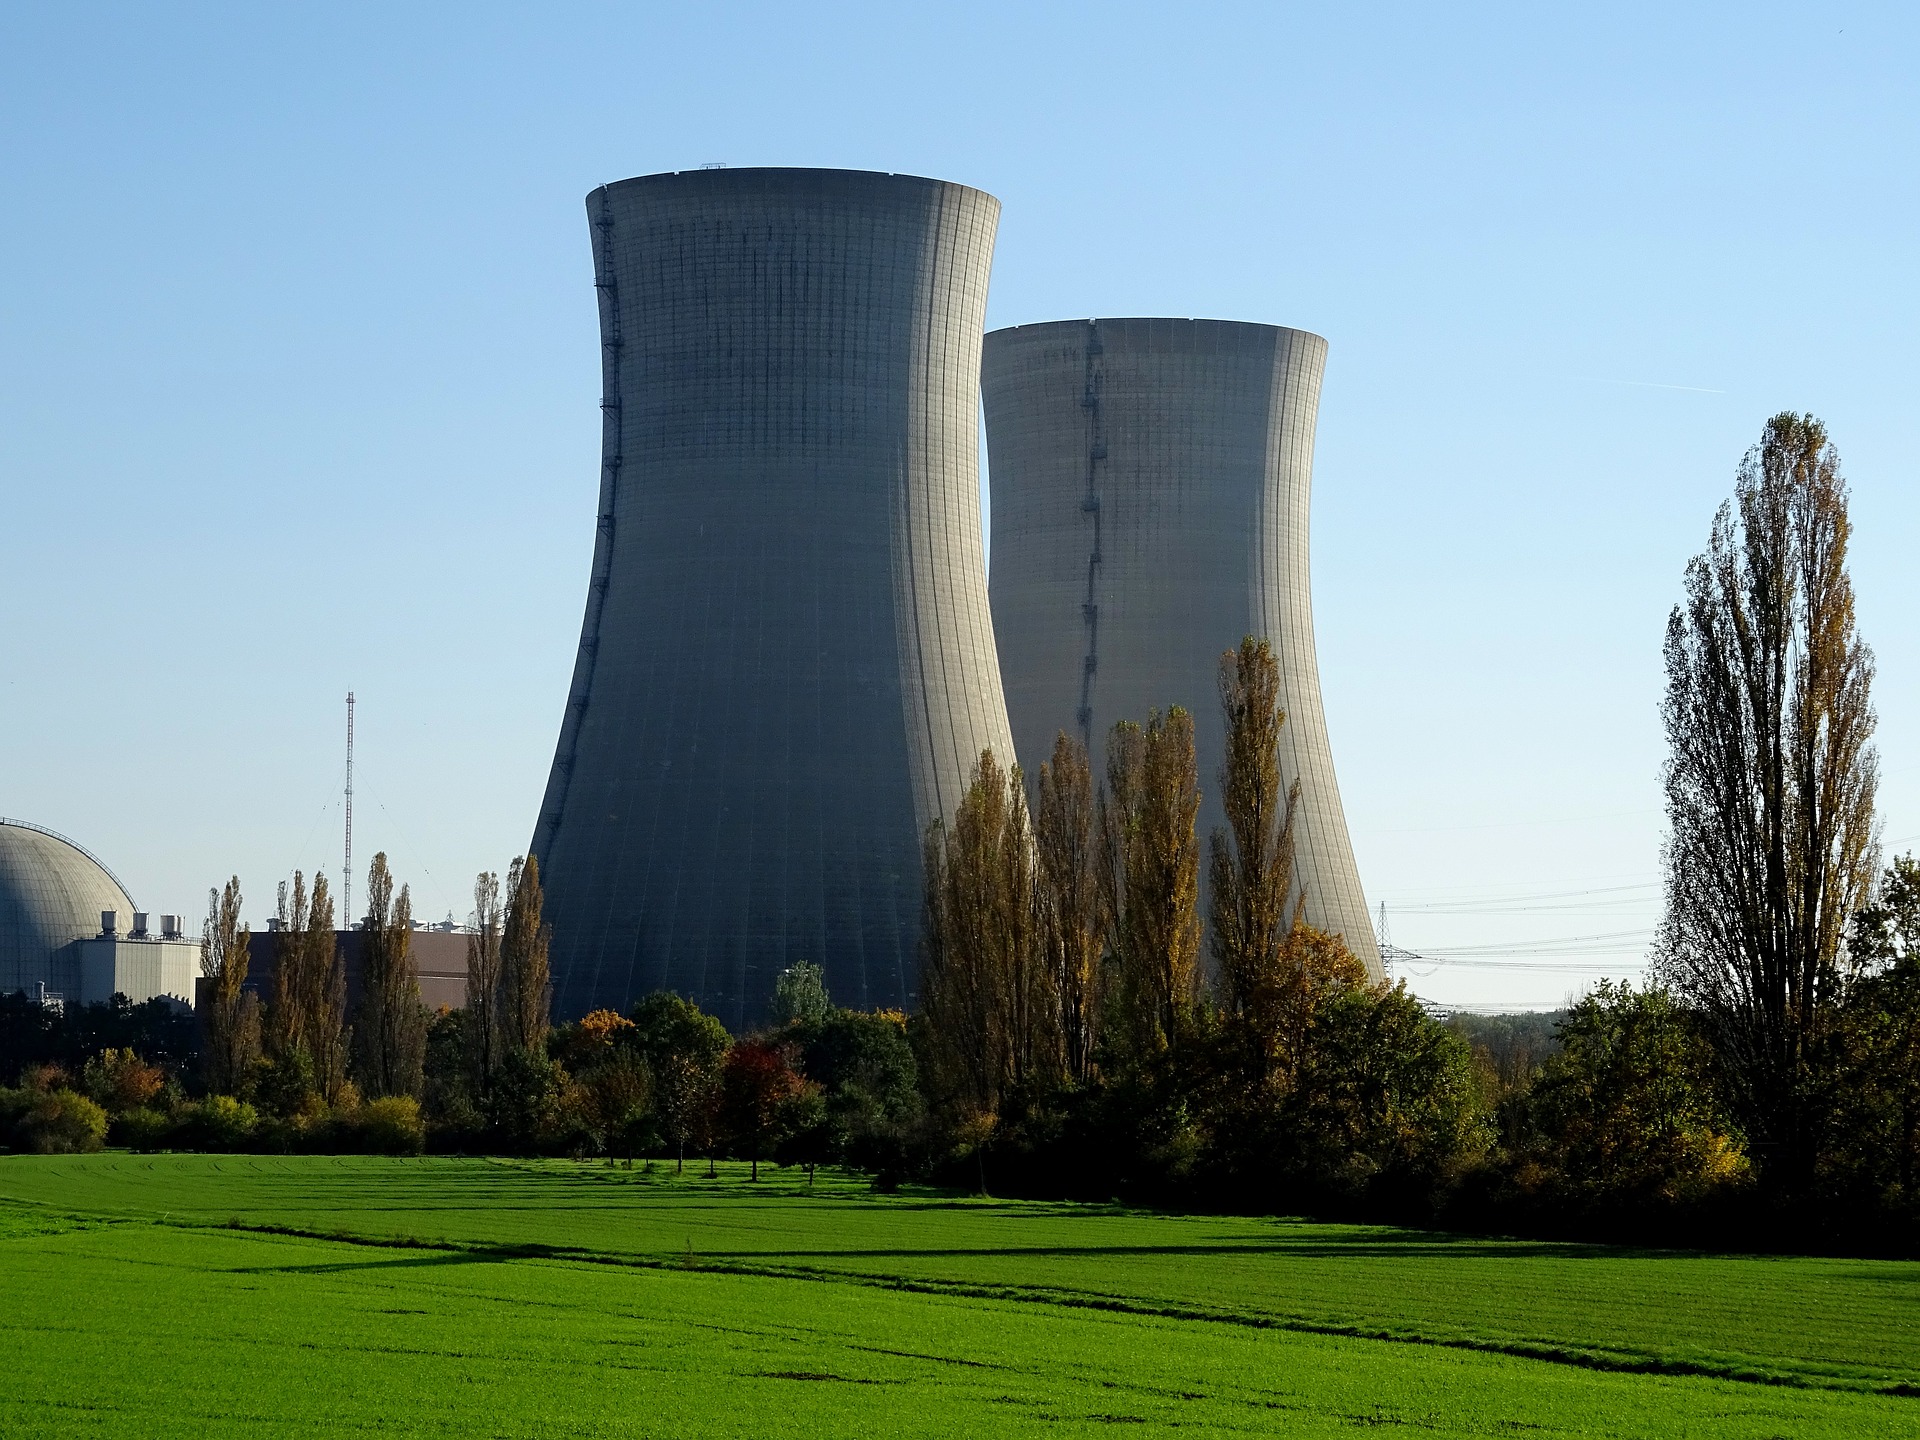 Atomkraftwerk: Diskussion um Kernkraft bestätigt Position der AfD